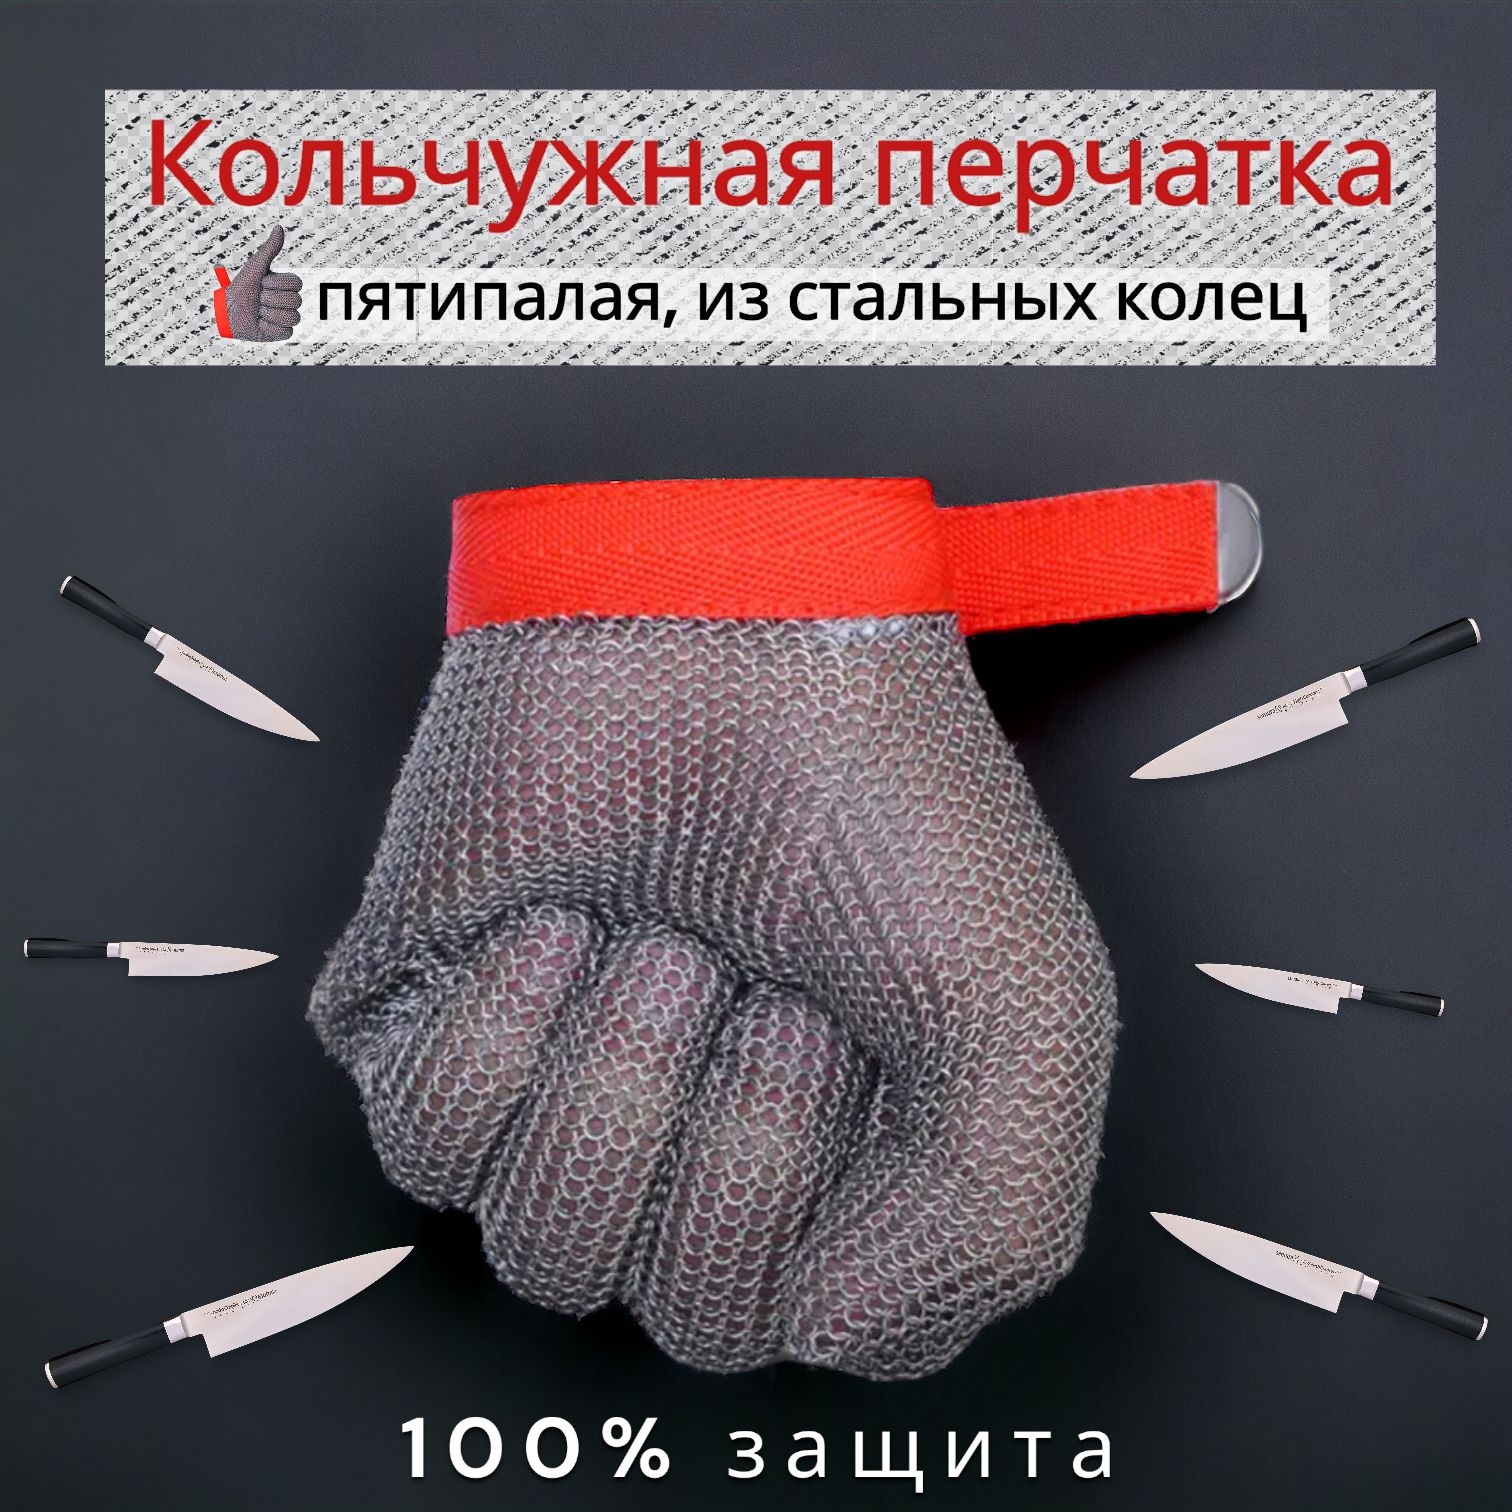 Защитная перчатка из стальных колец/ кольчужная/ для работы с острыми приборами